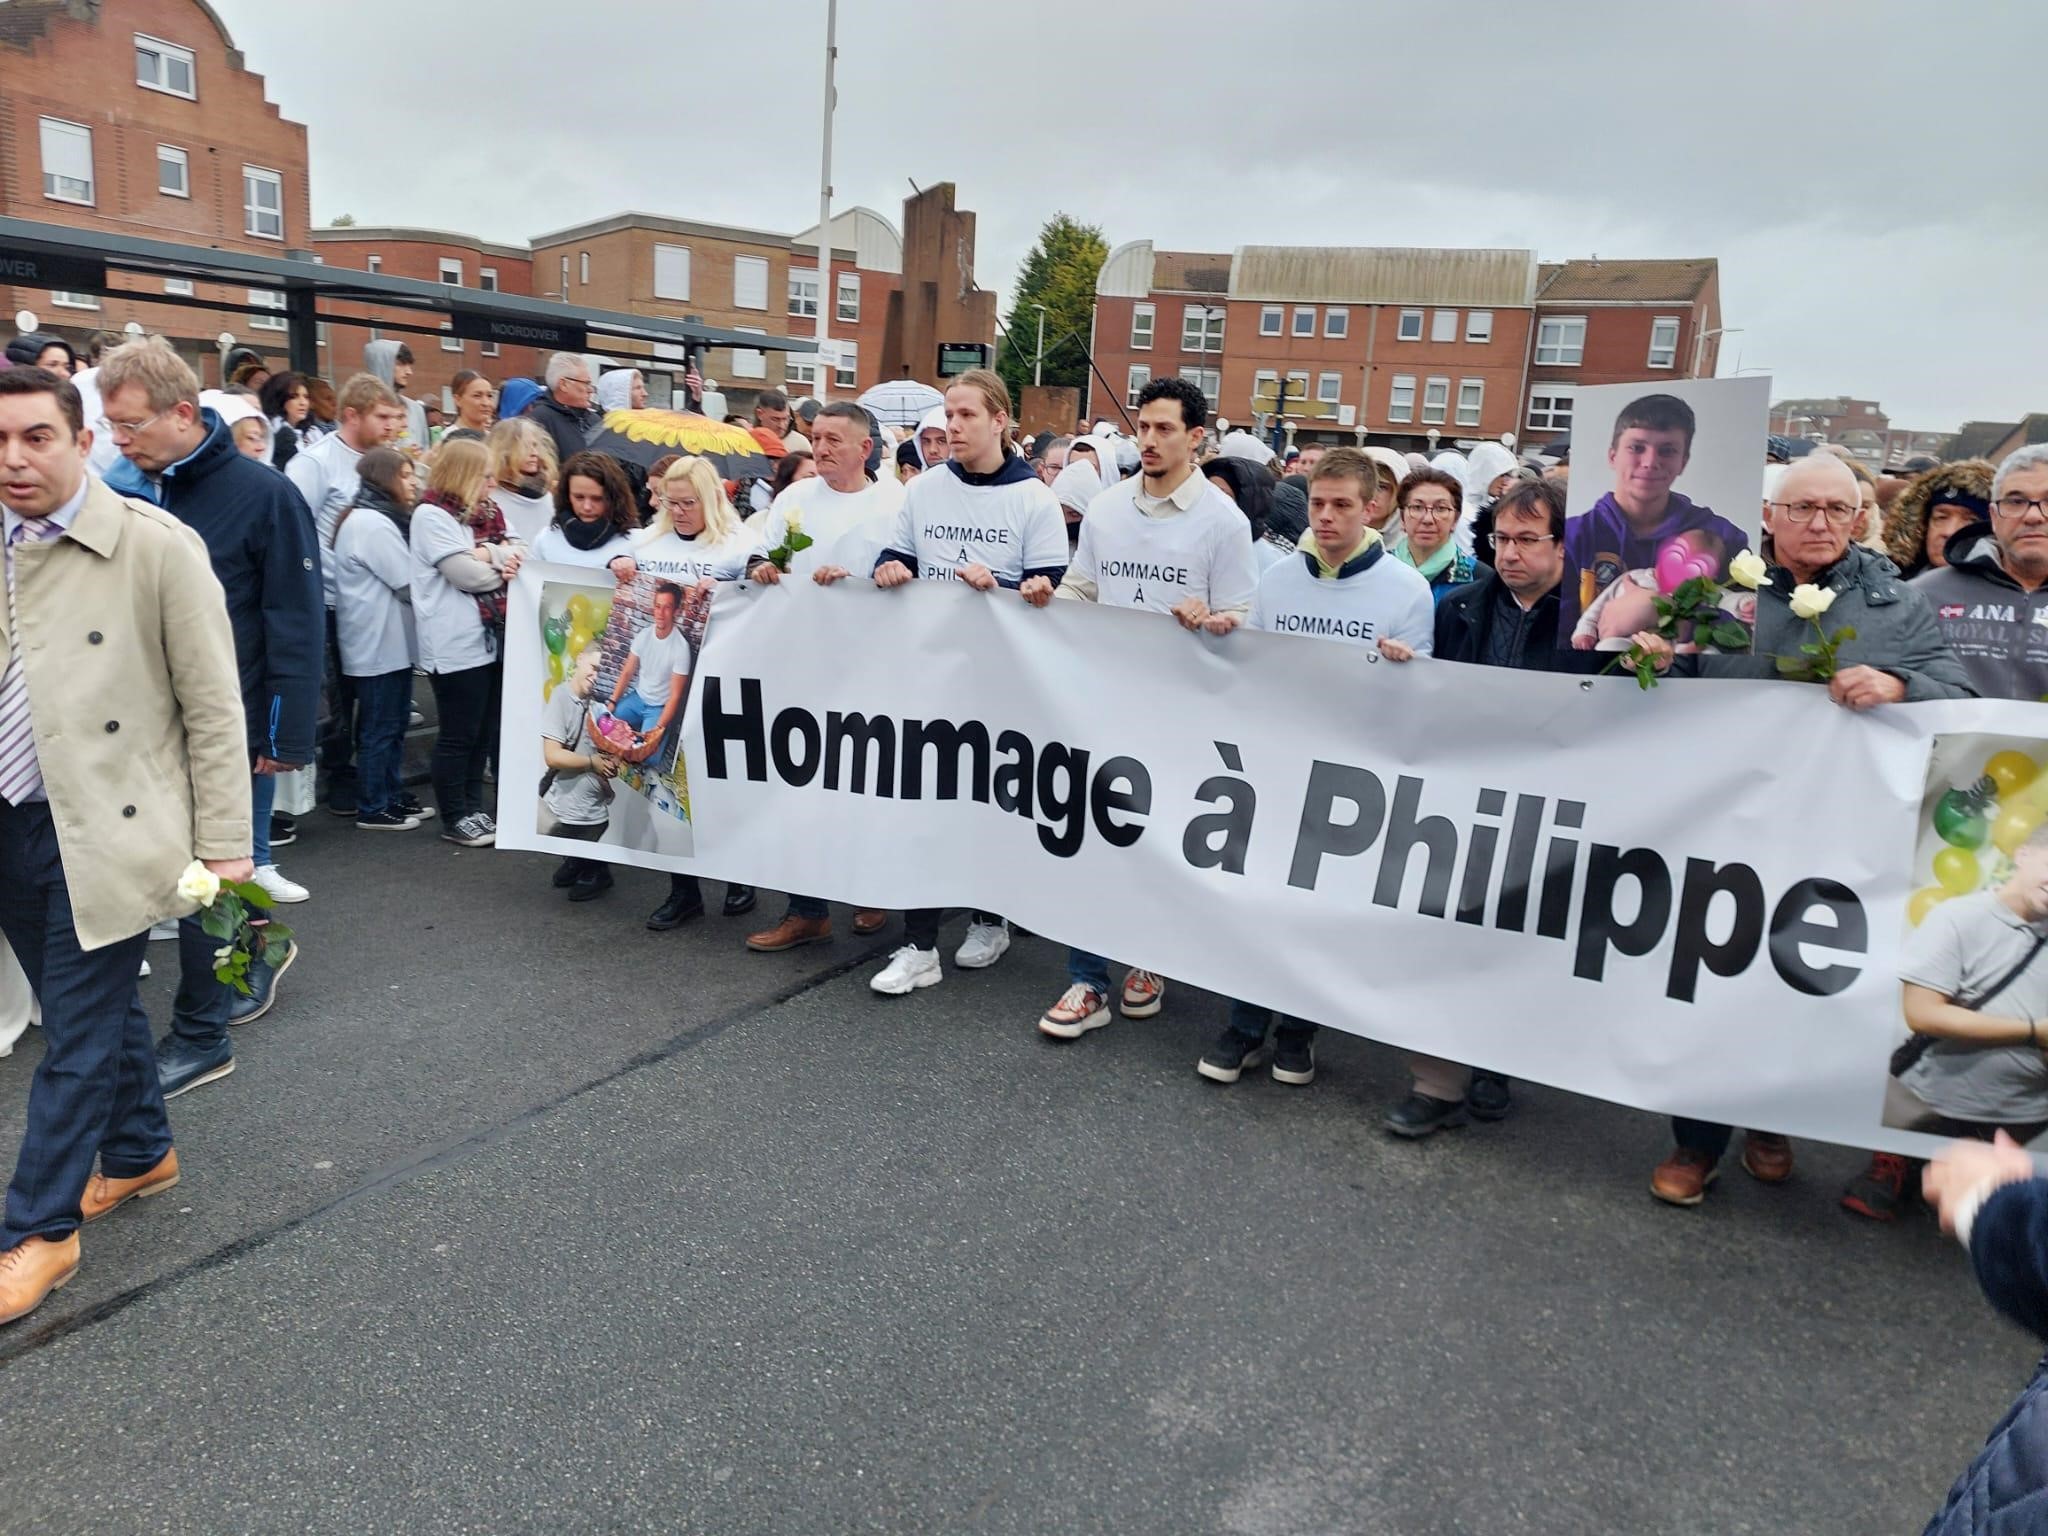 Une marche blanche a été organisée vendredi 19 avril à Grande-Synthe (Nord), en hommage à Philippe Coopman tabassé à mort trois jours plus tôt. LP/Timothée Boutry